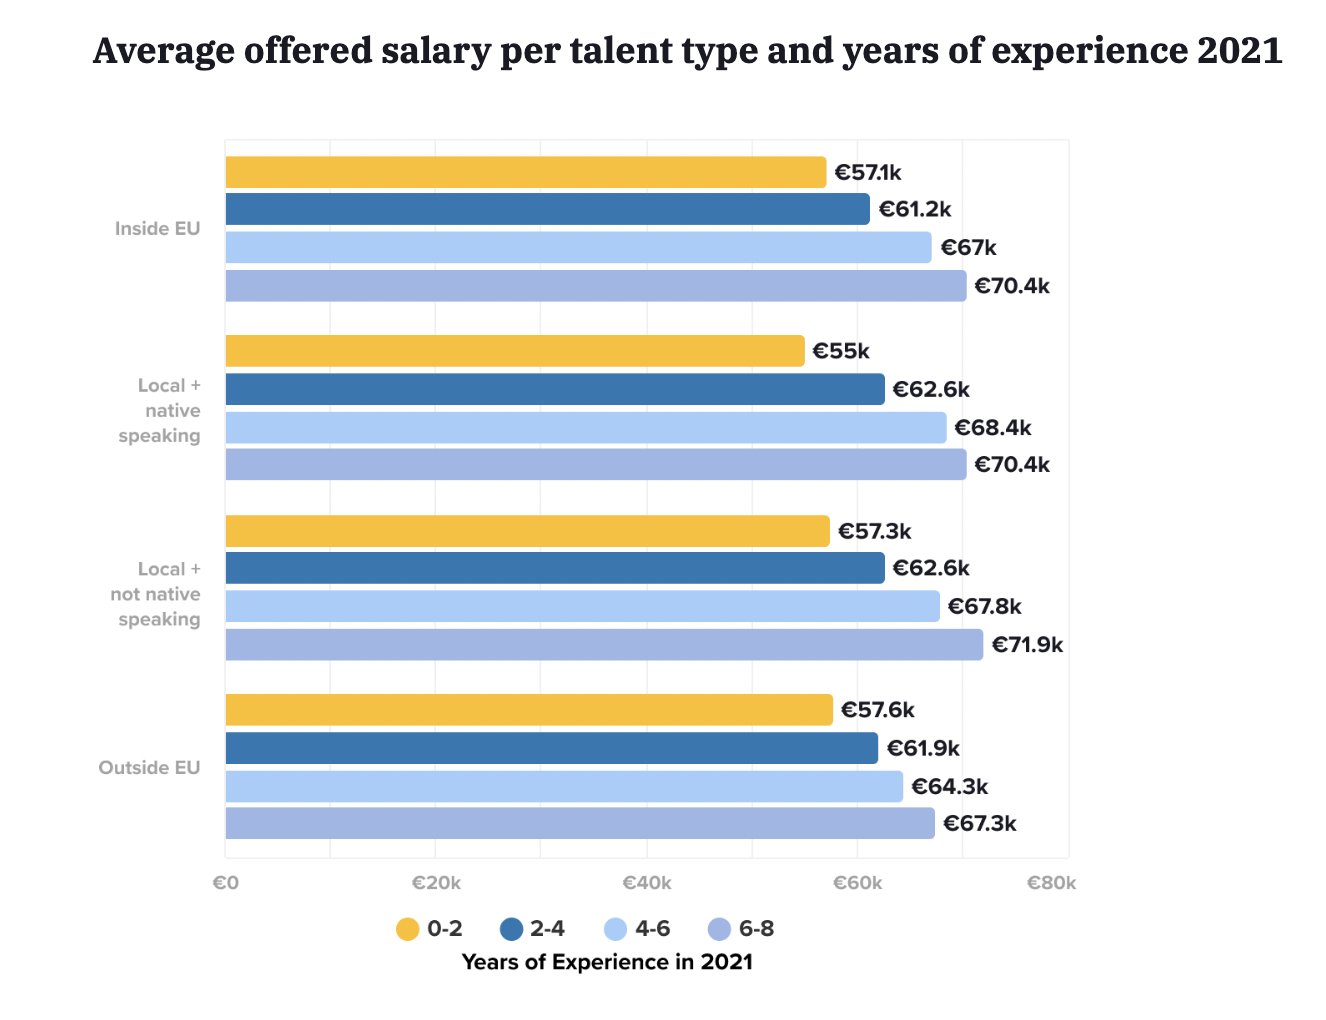     Salario promedio ofrecido por tipo de talento y años de experiencia en Alemania en 2021 